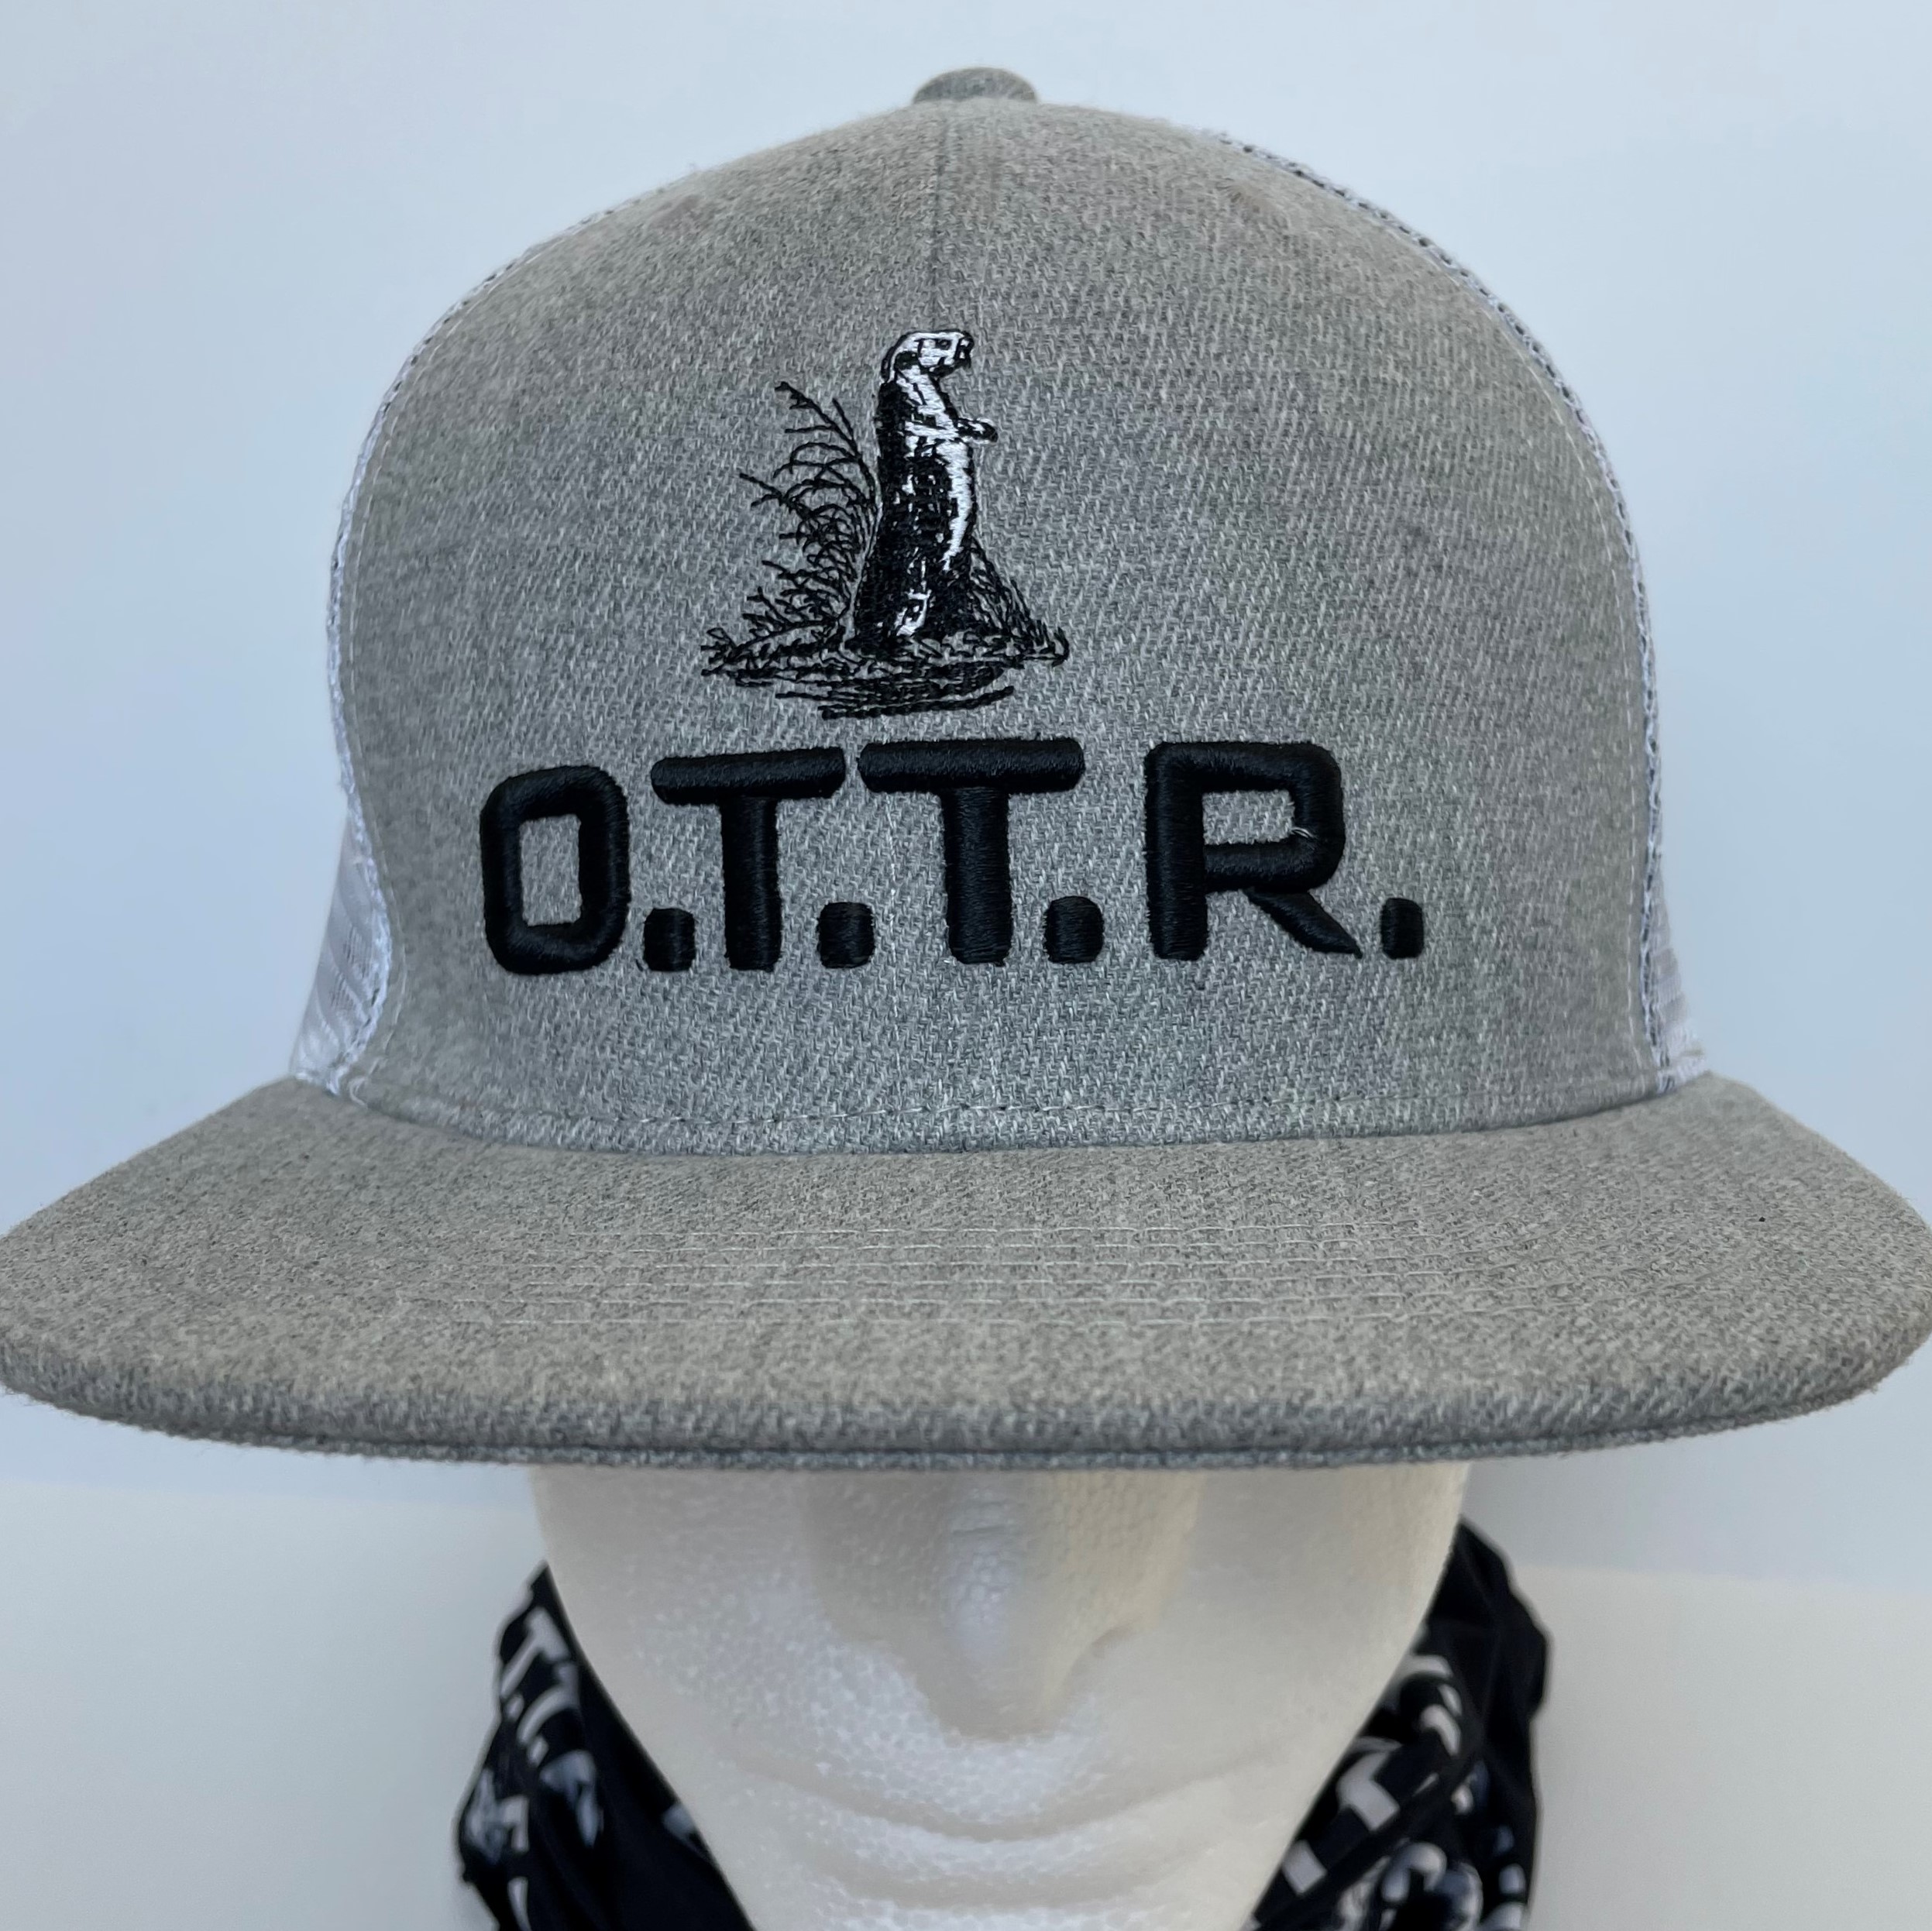 The OTTR Flat bill – O.T.T.R